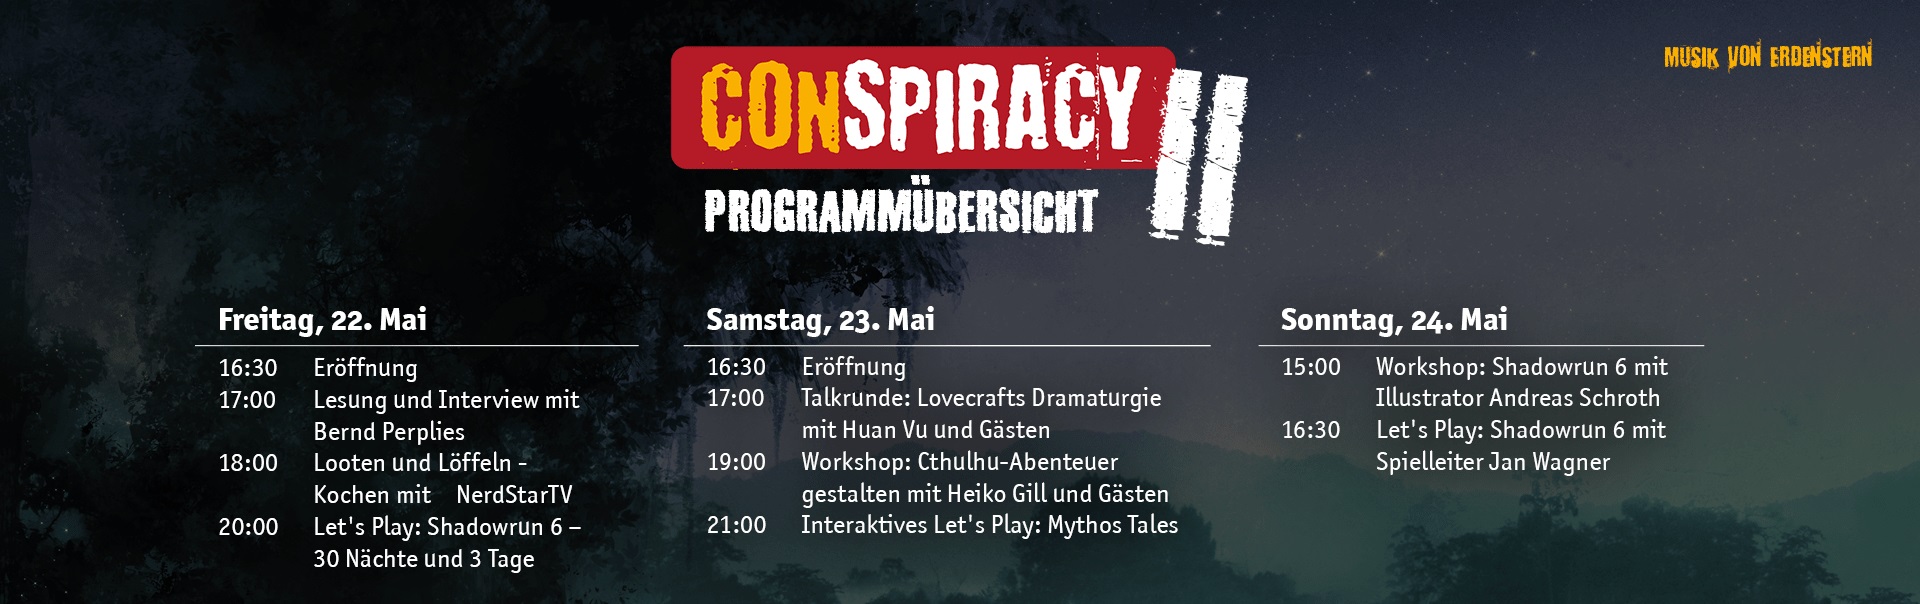 conspiracy2-programmmc3bcbersicht-sr-cth